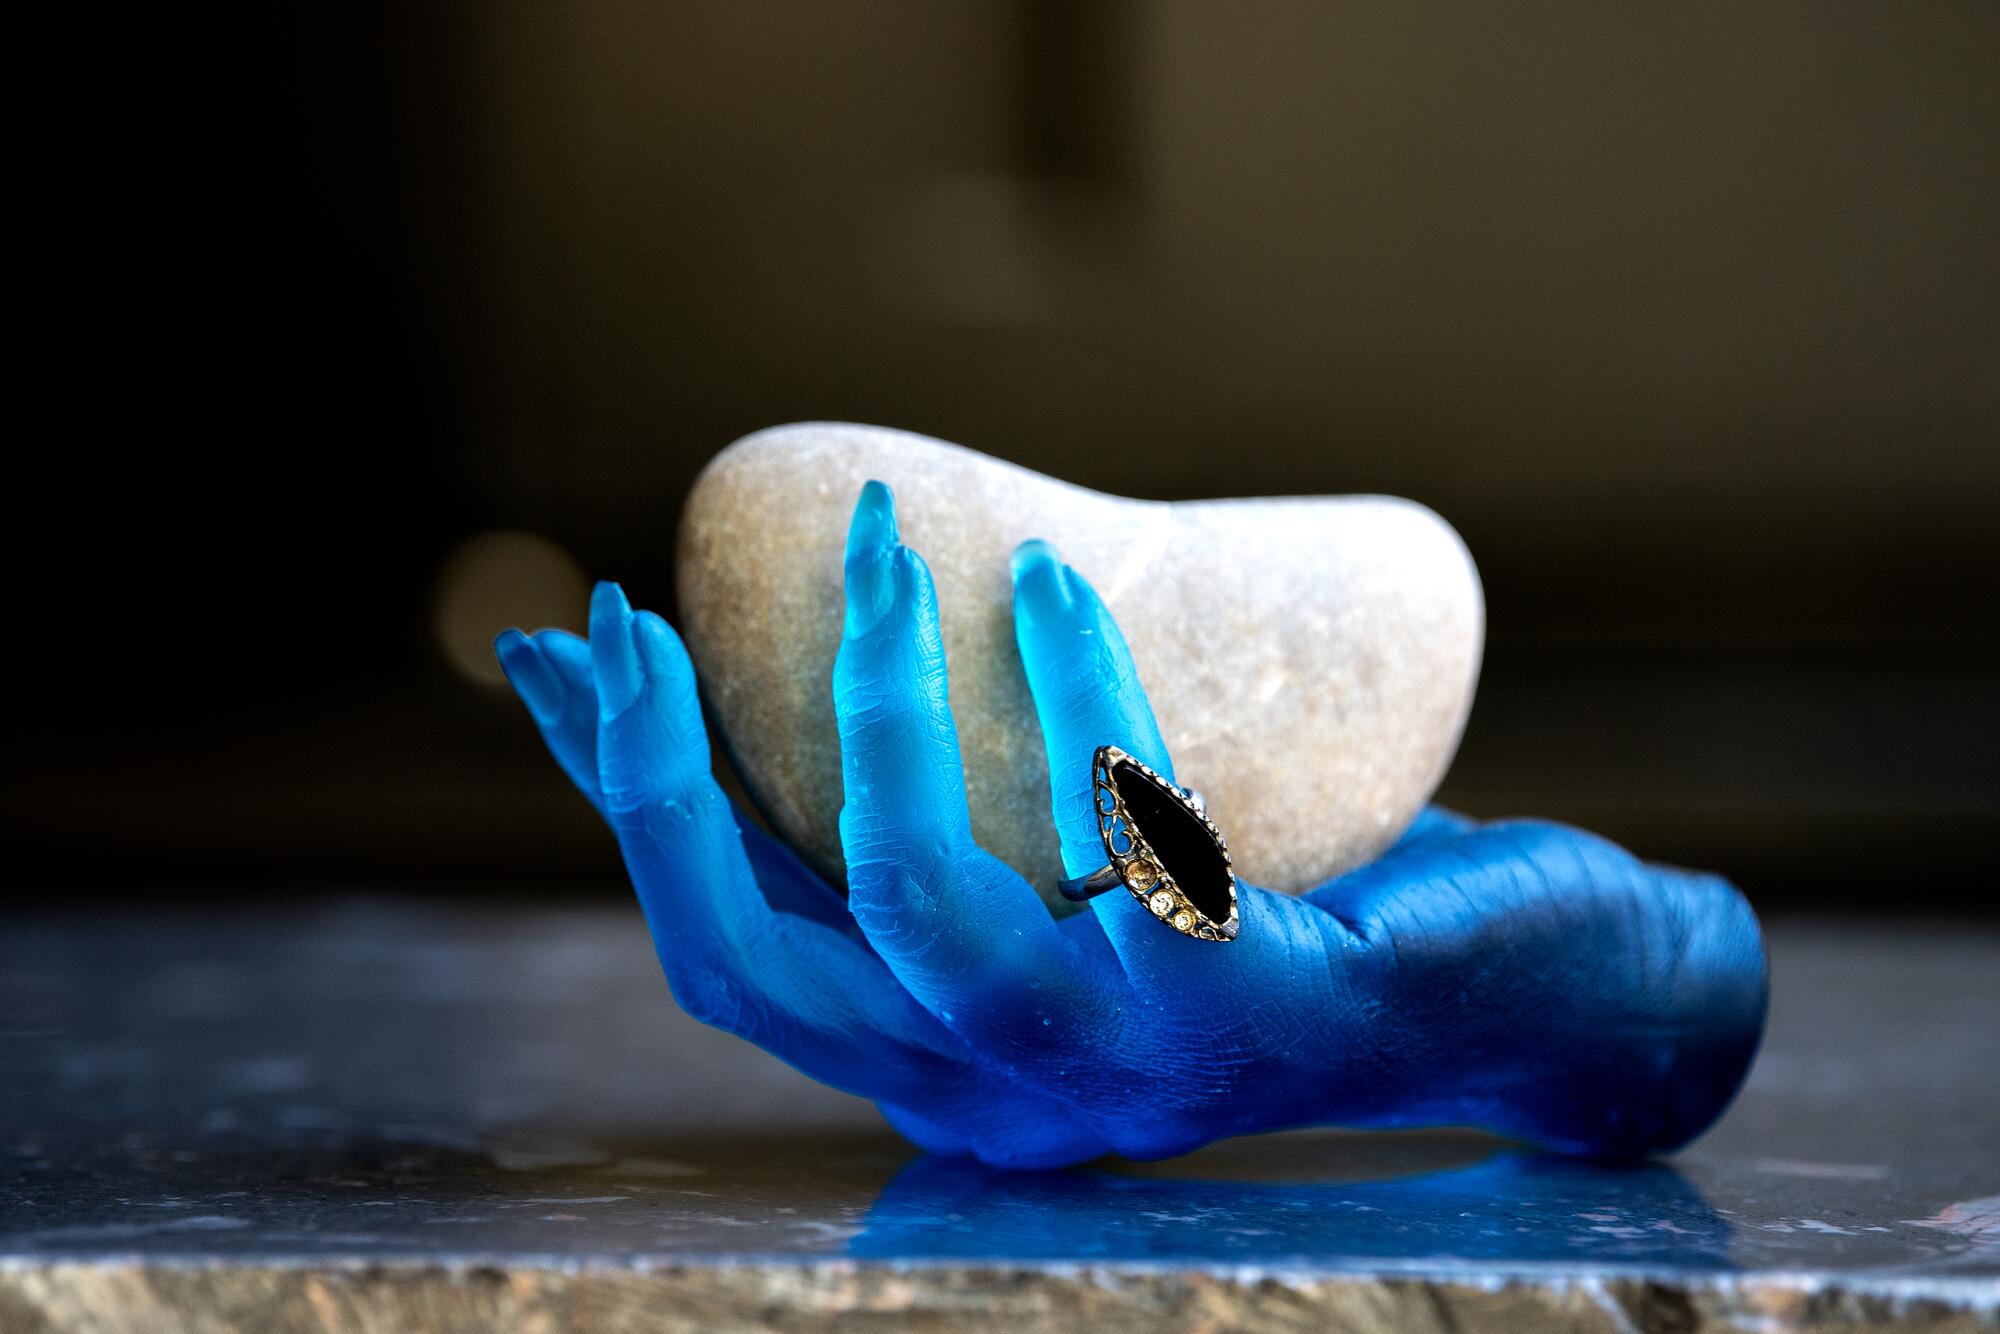 A blue sculpted hand holds a rock.